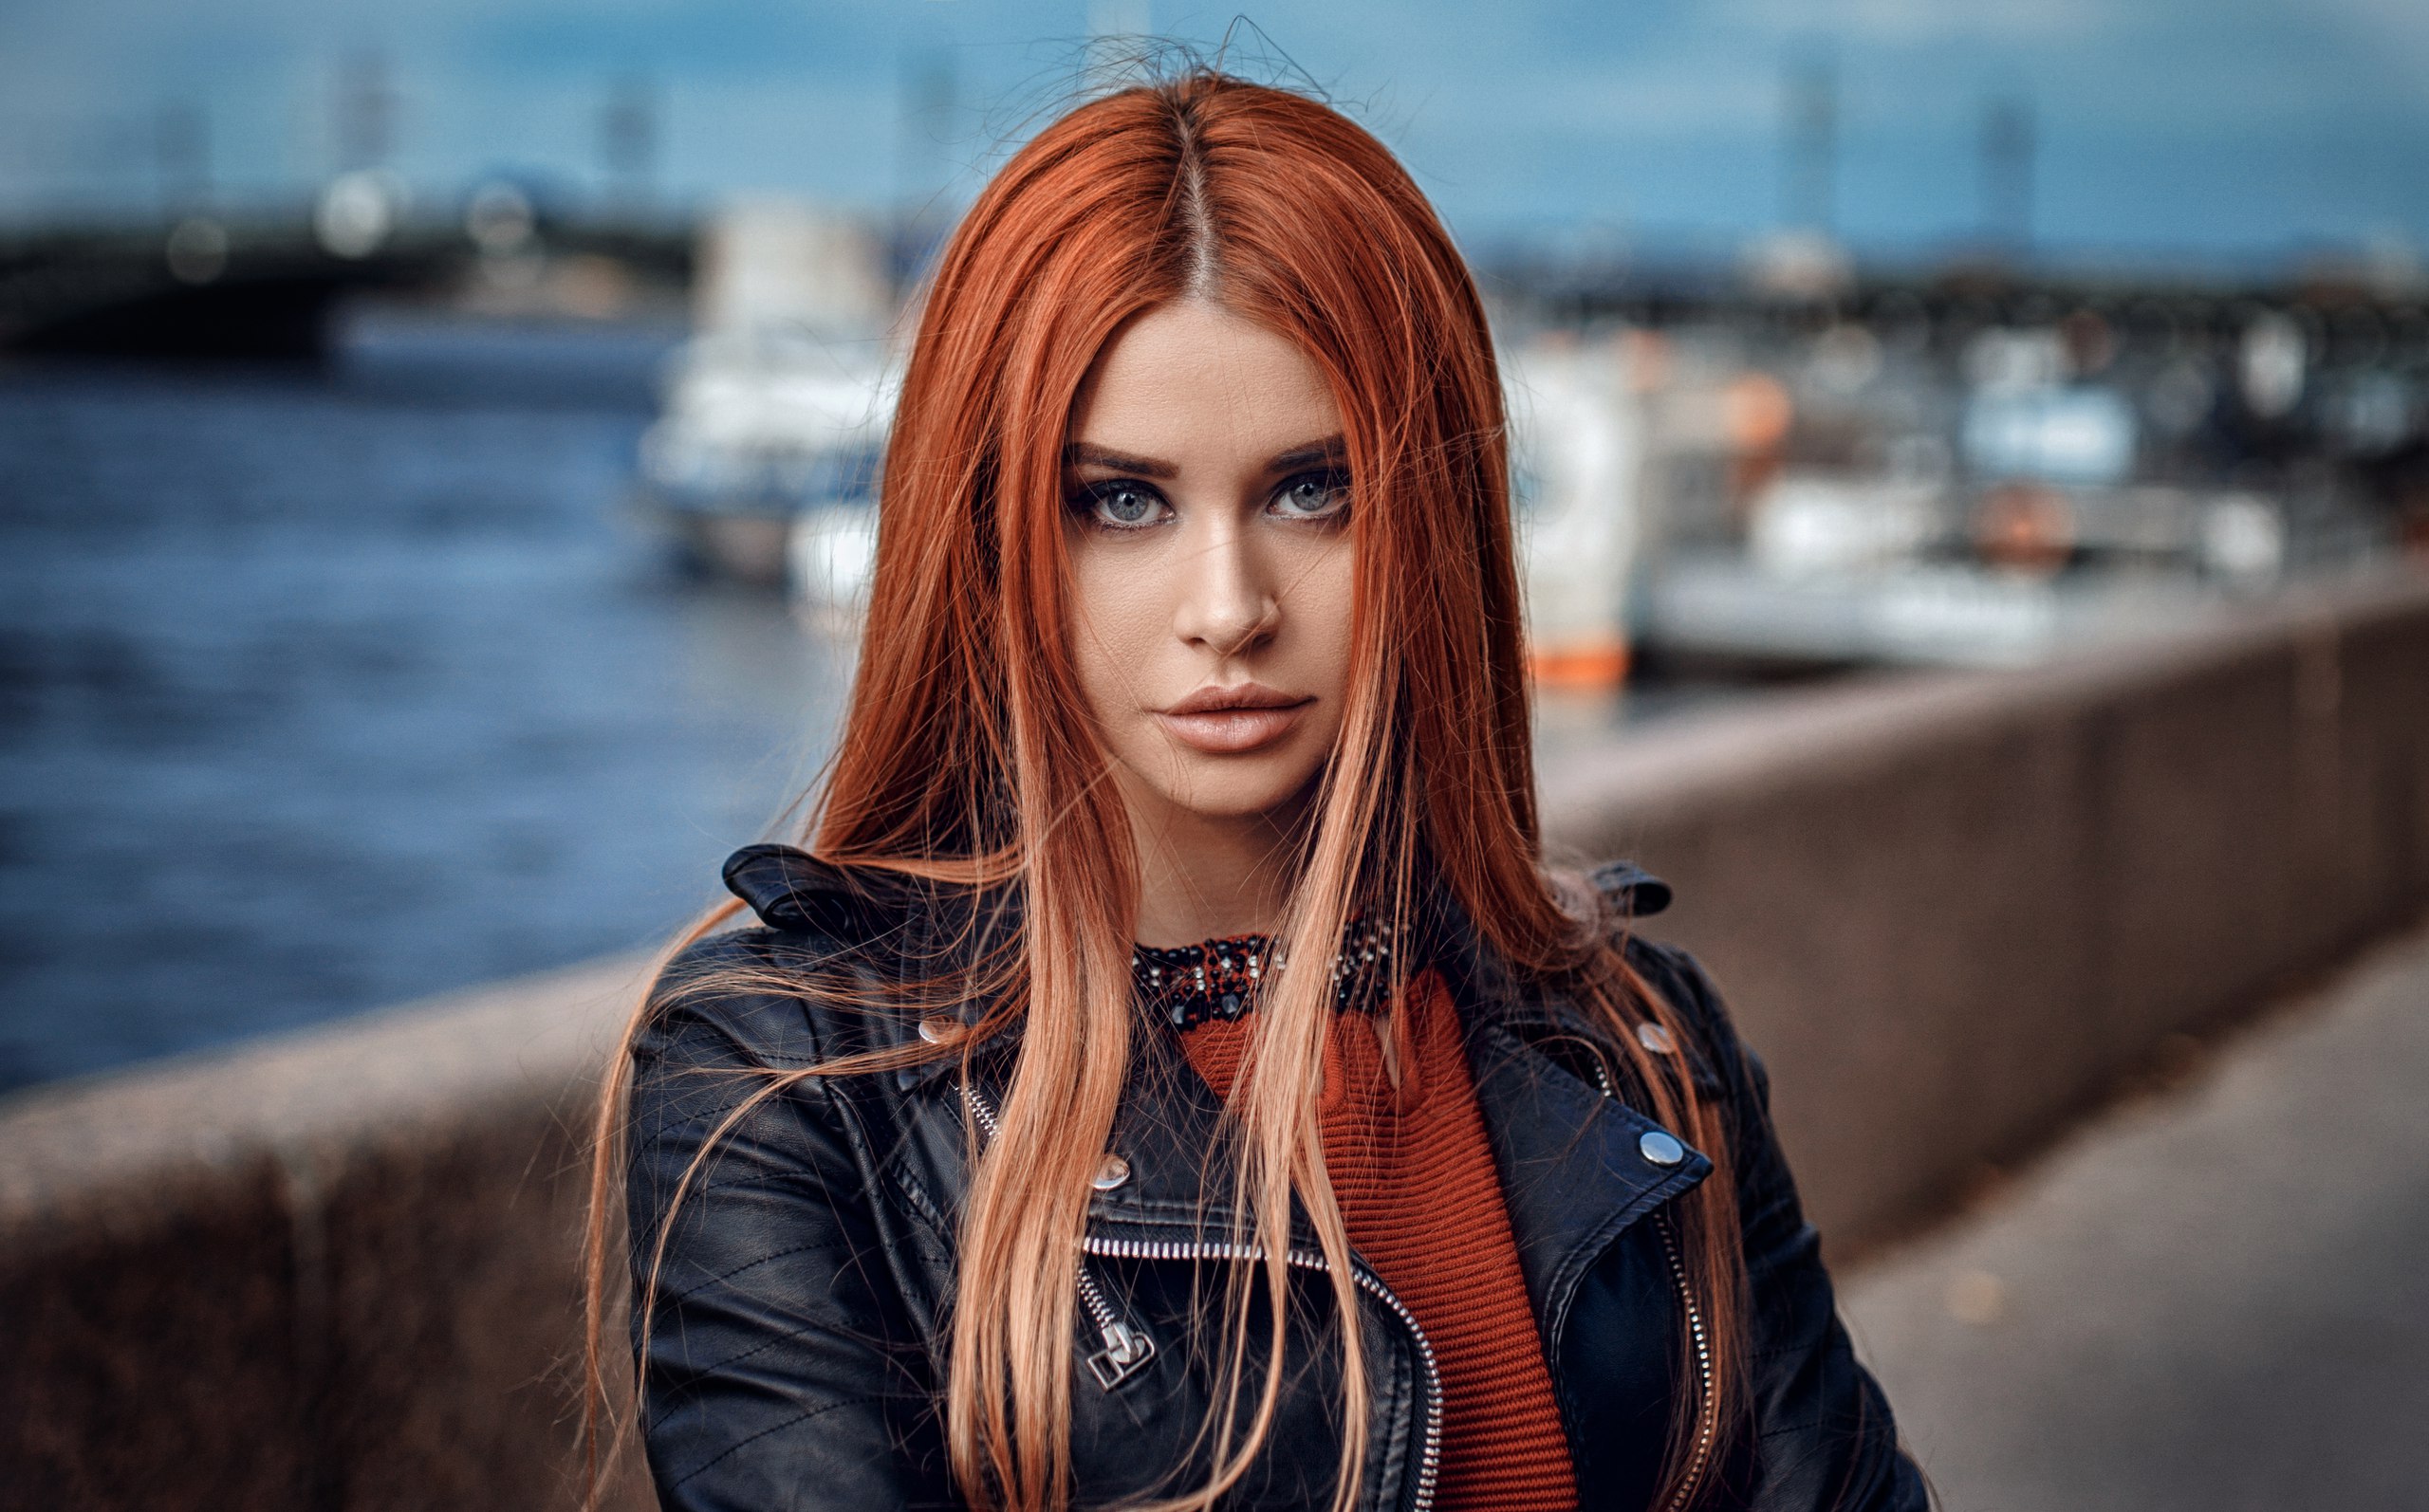 Dana Bounty Women Redhead Portrait Leather Jackets Depth Of Field Women Outdoors 2560x1594